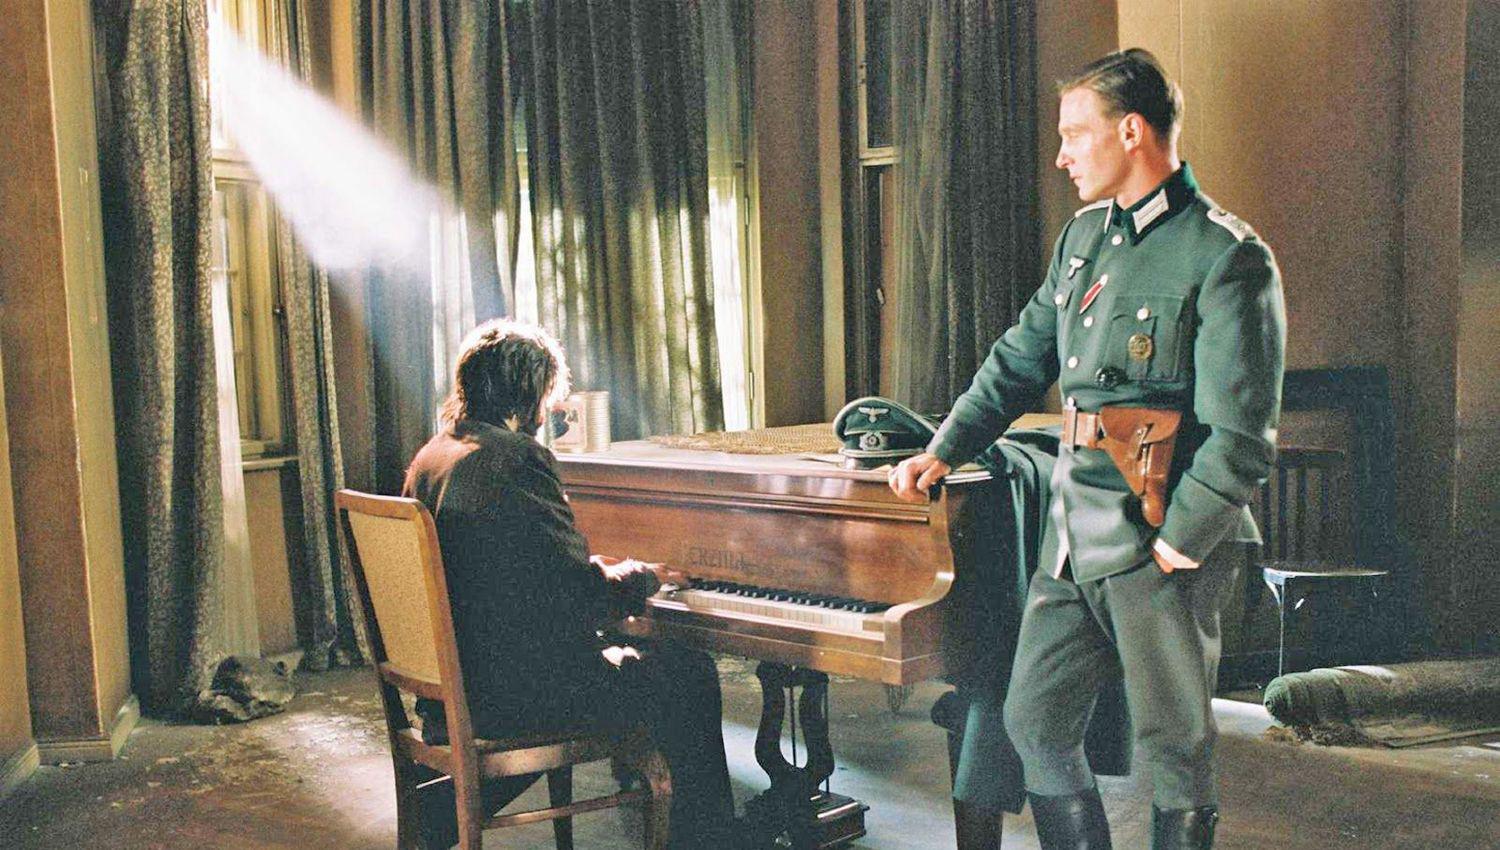 Escena de la película El Pianista con Adrian Brody como protagonista